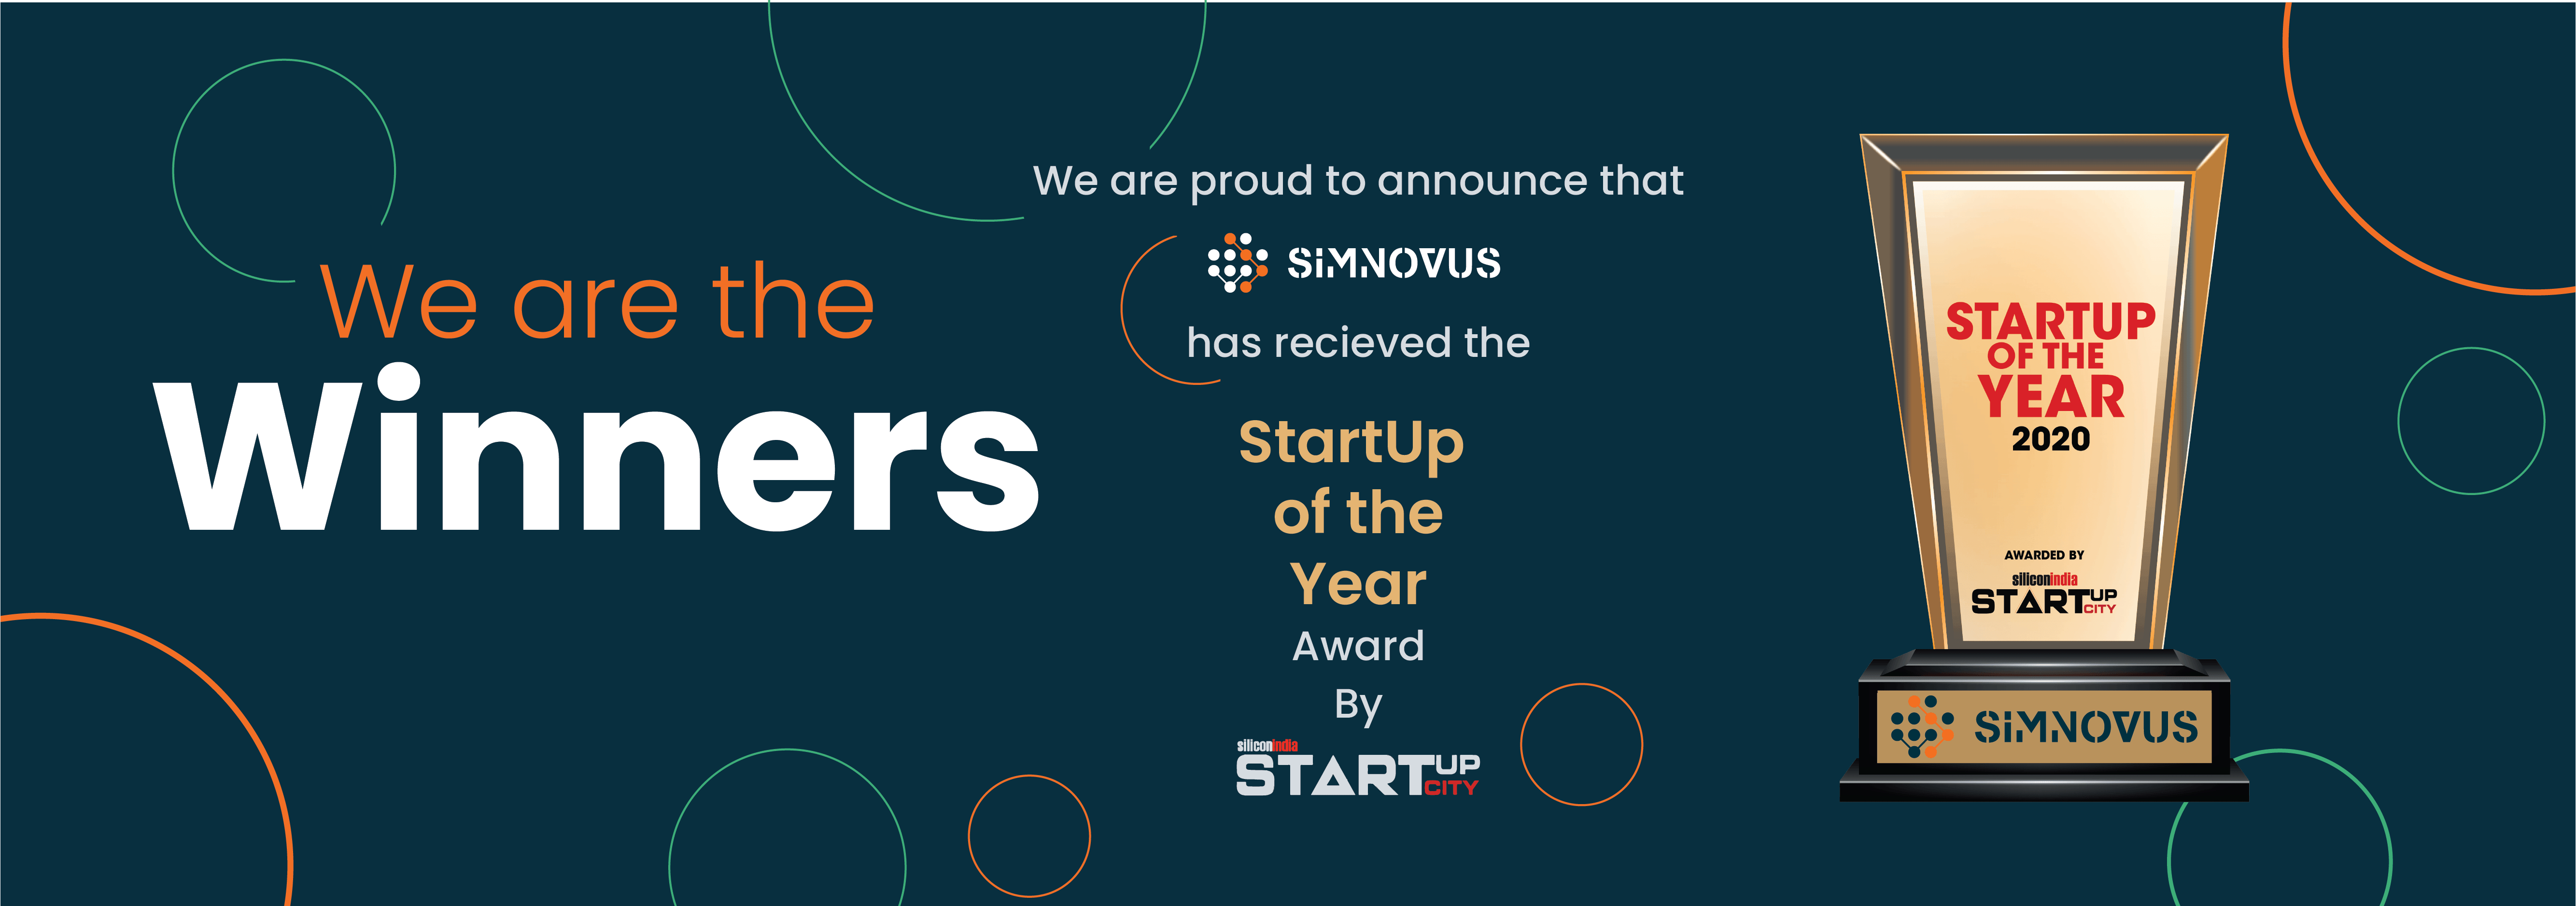 simnovus-wins-startup-award